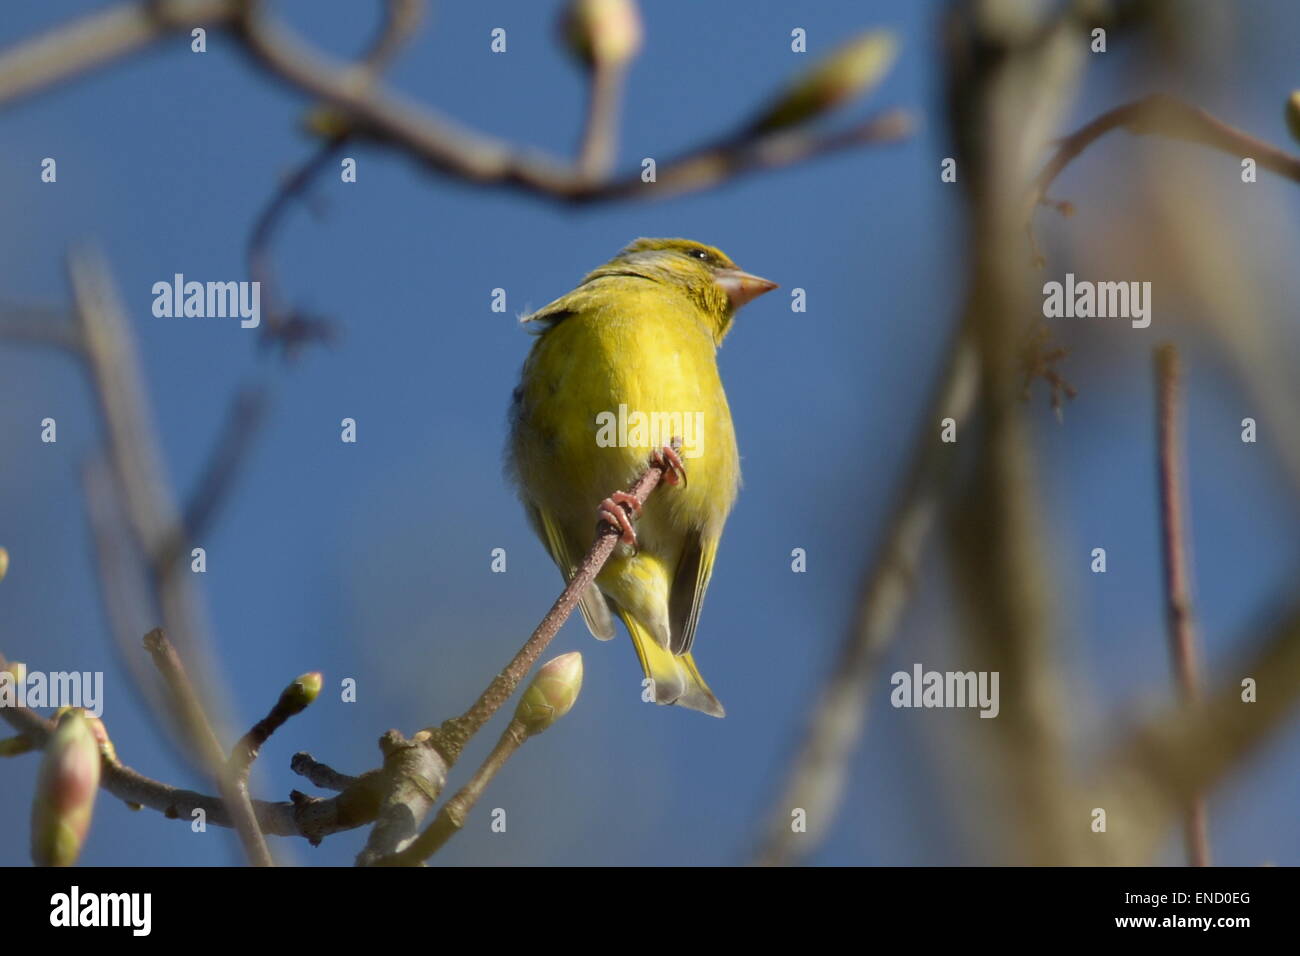 Un vert juvénile avec finch plumage jaune vif est perché sur les branches contre un ciel bleu printemps Banque D'Images